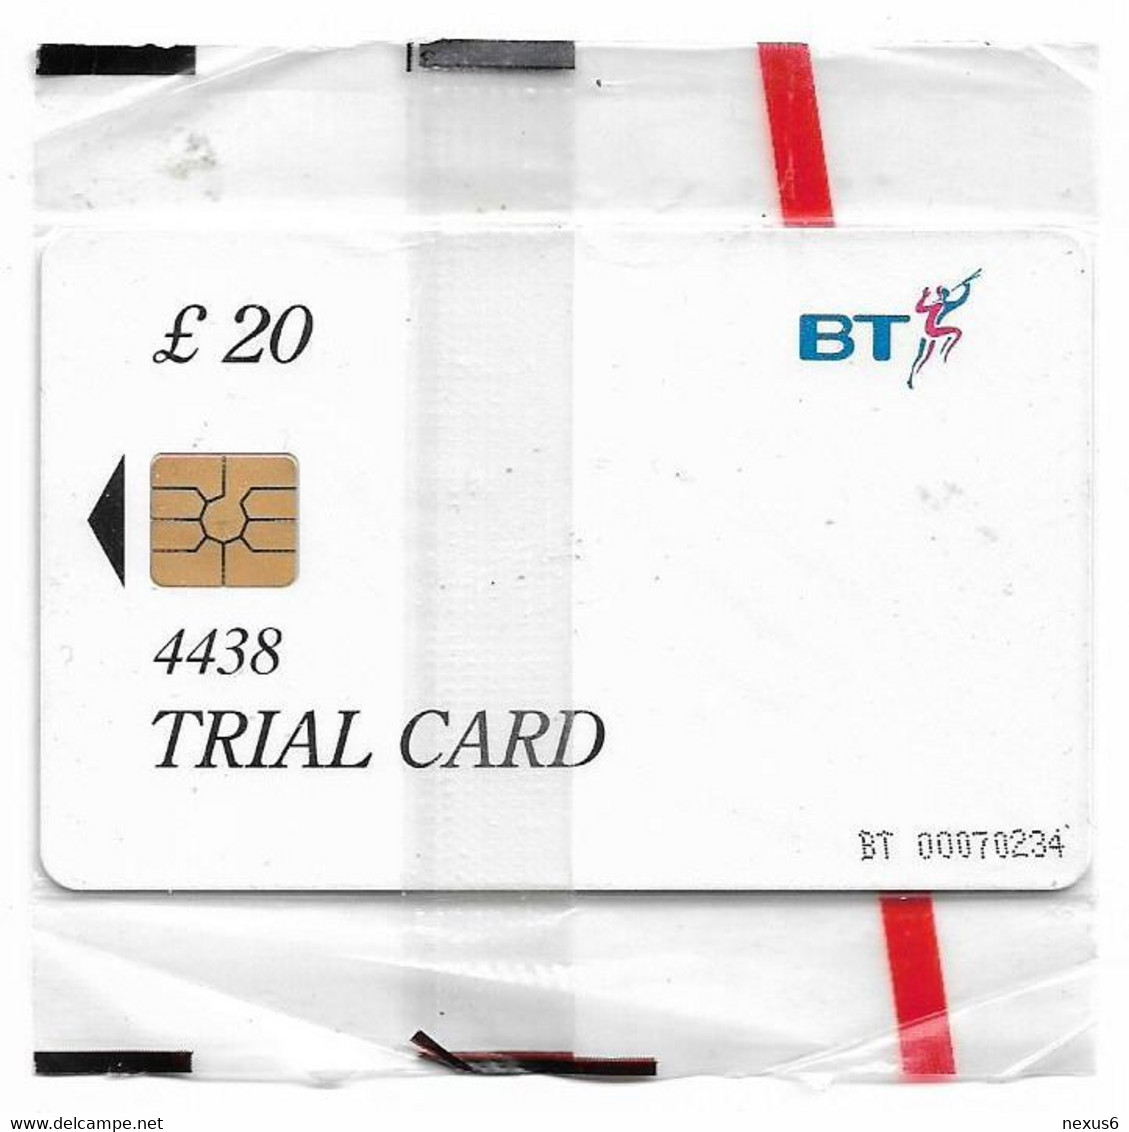 UK - BT - BCF - Rose Trial Card 20£, TRL016b (No Date, Written 4438, Big Gemplus), 1.000ex, NSB - BT Test & Essais